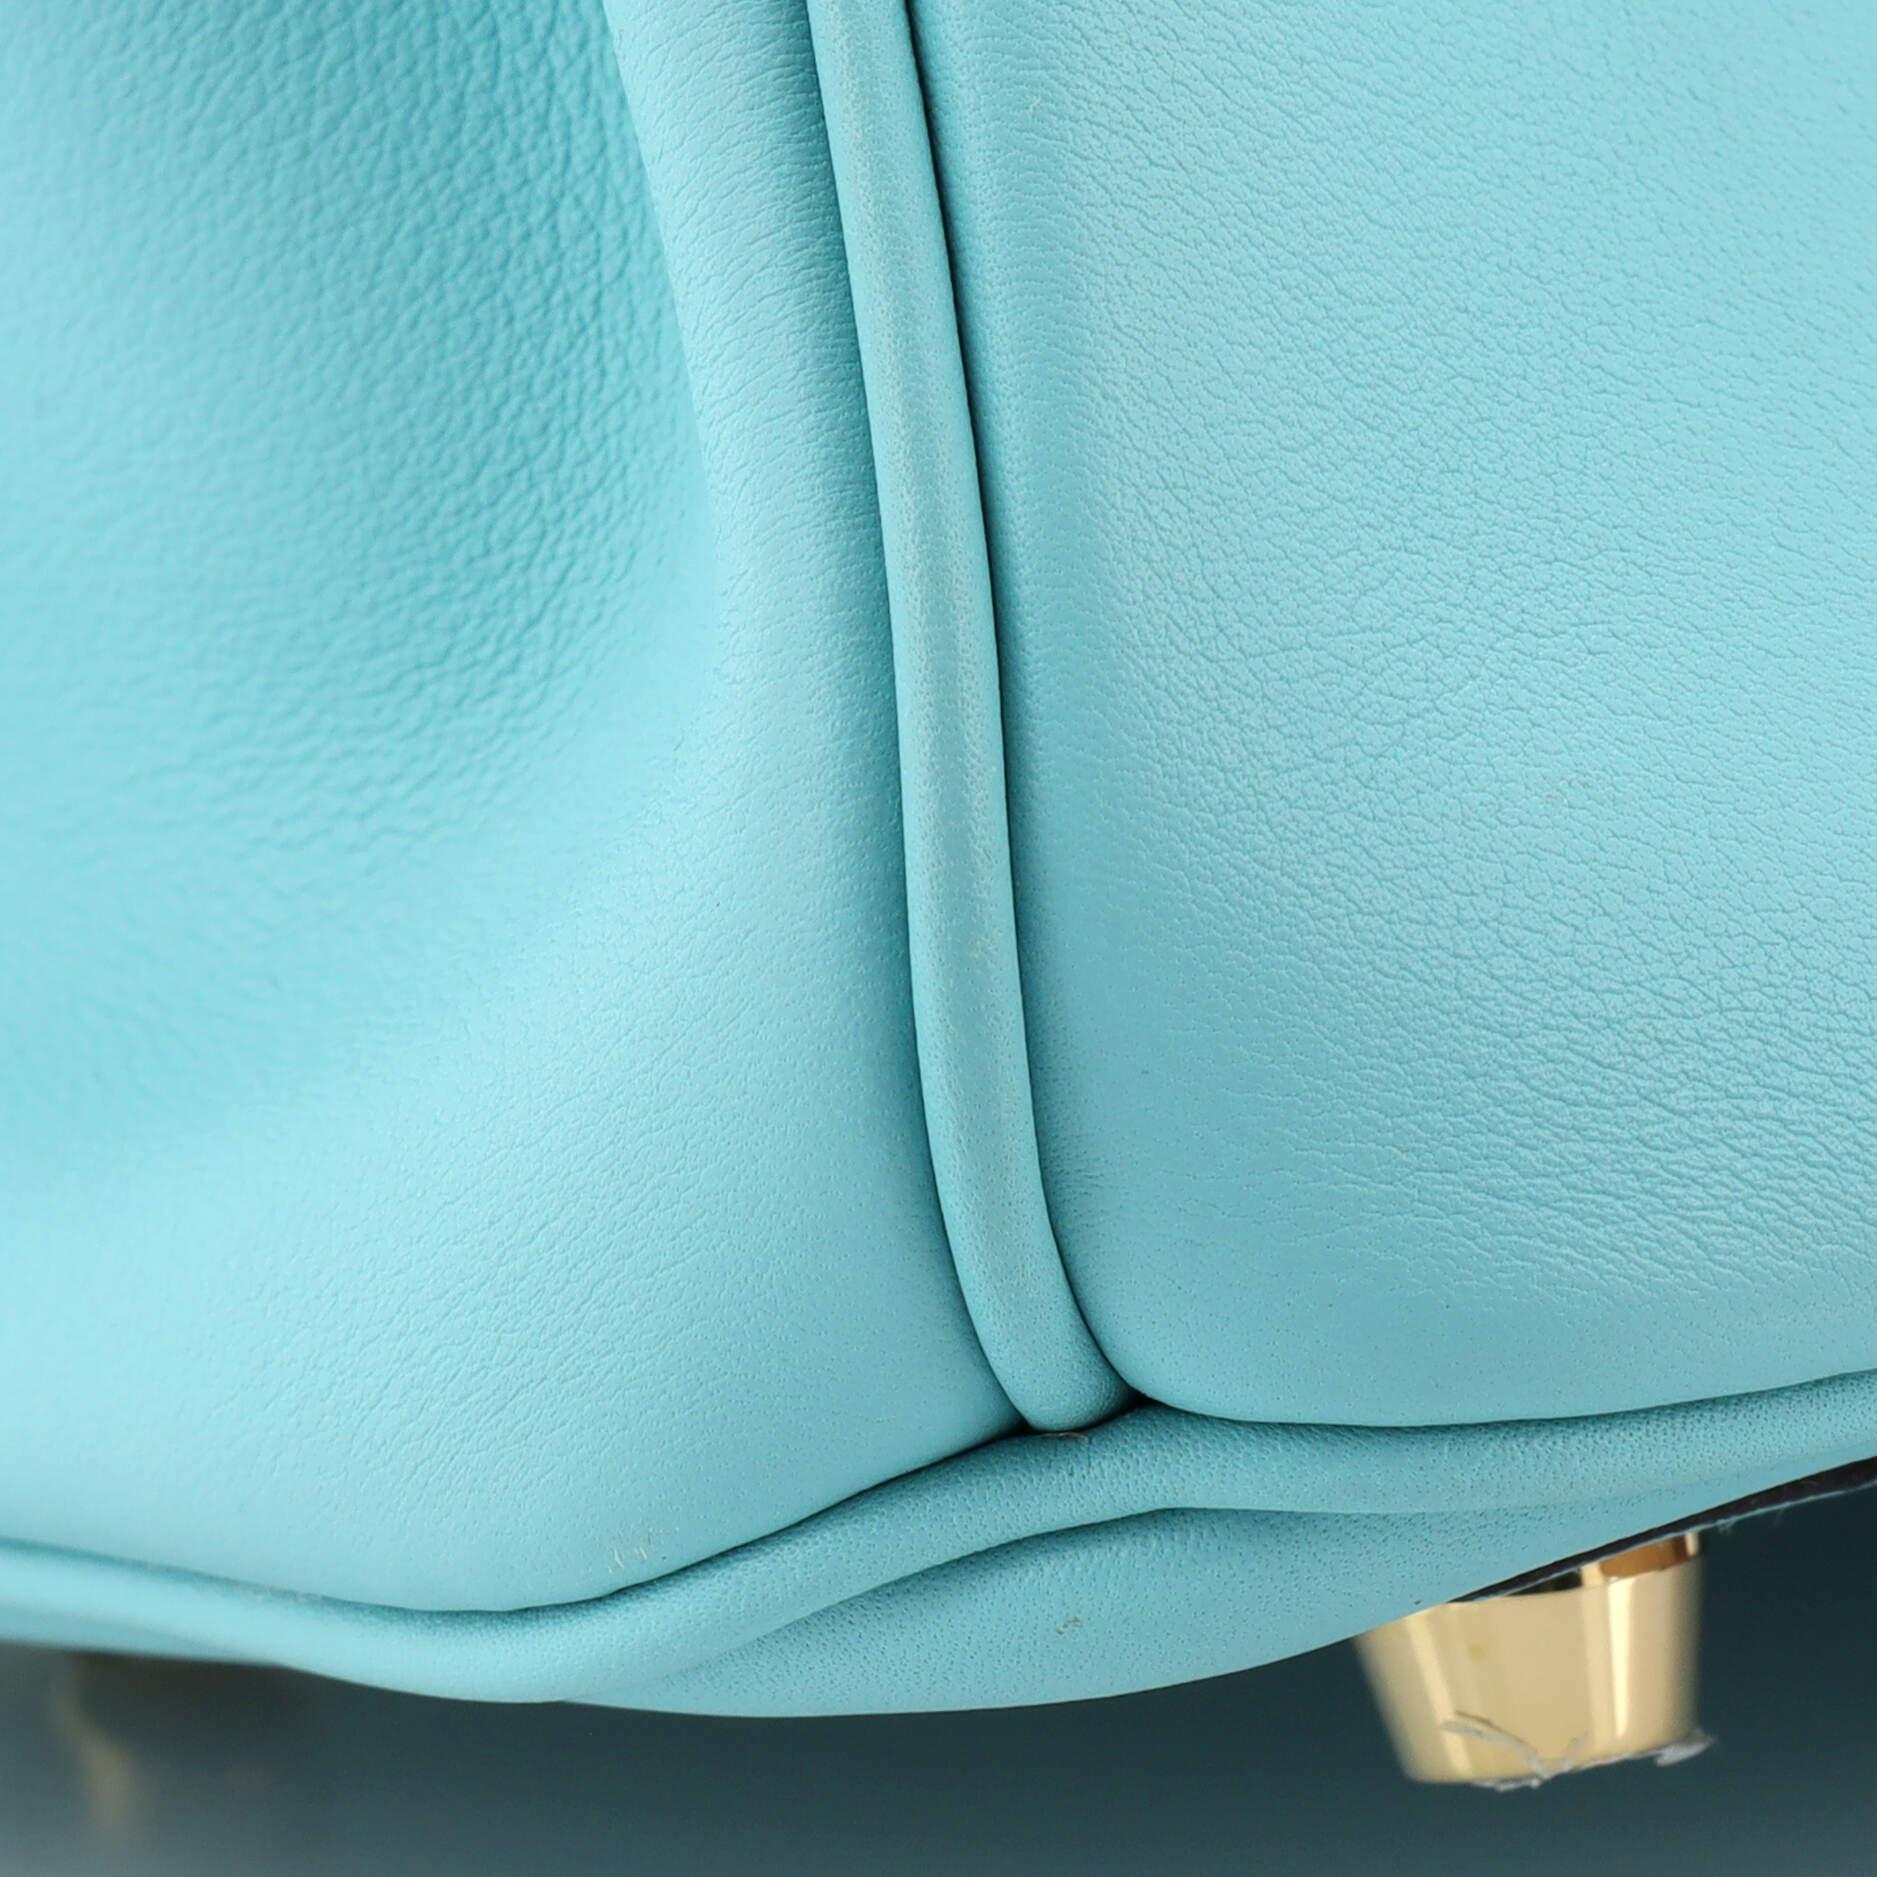 Hermes Birkin Handbag Bleu Atoll Swift with Gold Hardware 25 For Sale 4